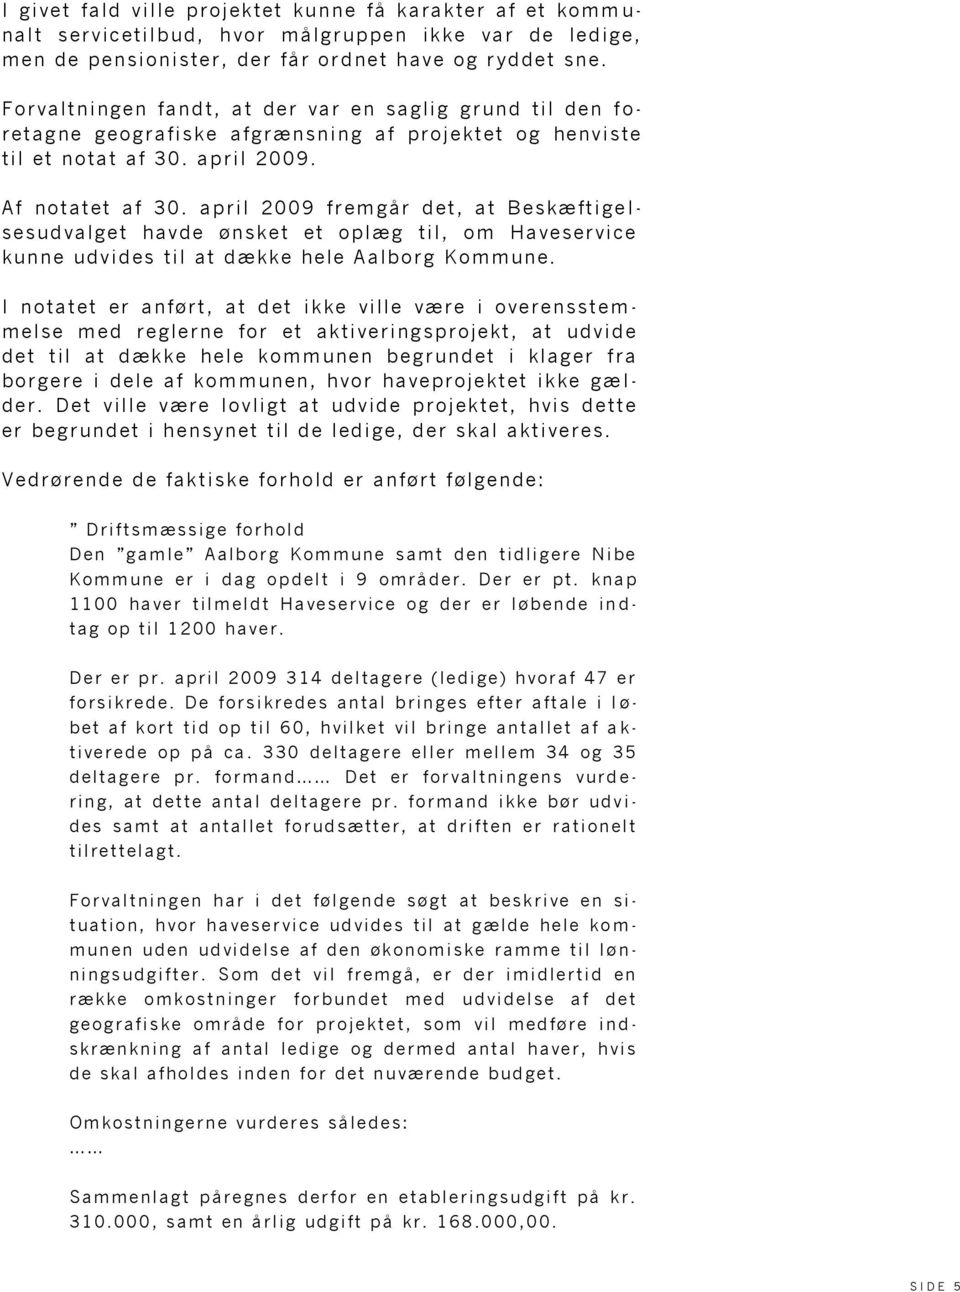 april 2009 fremgår det, at Beskæftige l- sesudvalget havde ønsket et oplæg til, om Haveservice kunne udvides til at dække hele Aalborg Kommune.